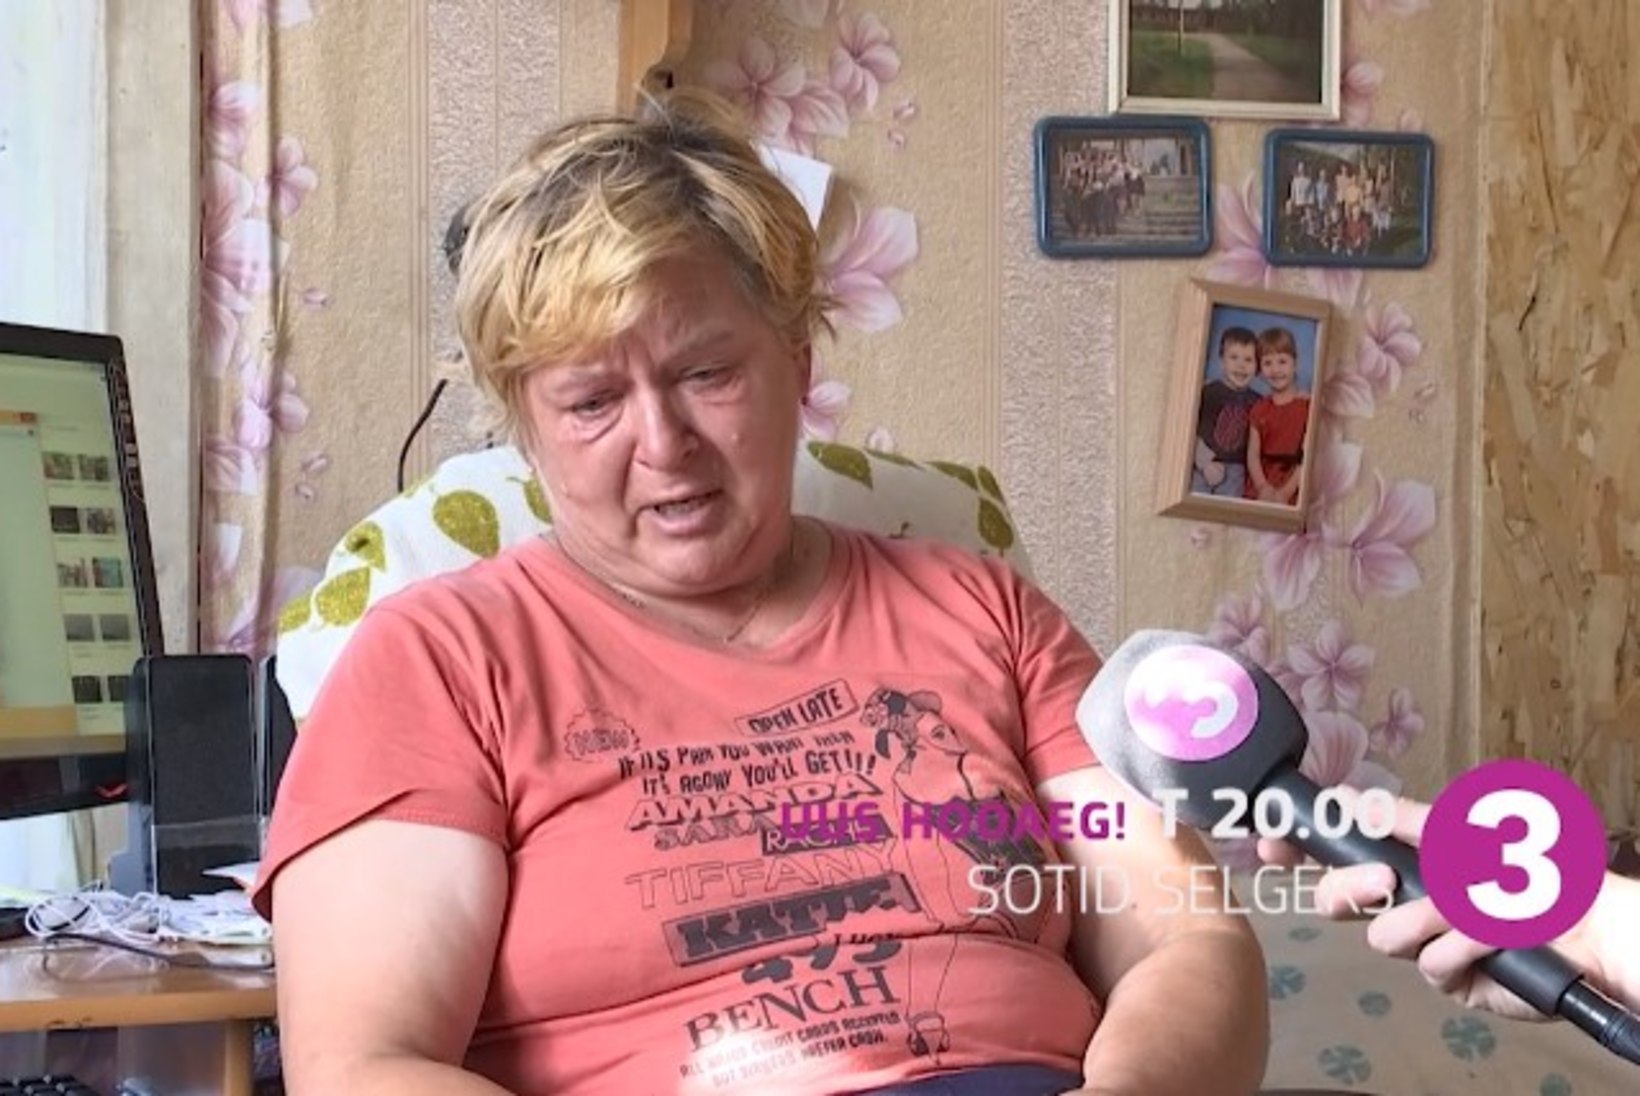 LIGIMESEARMASTUS: Eesti inimesed soovivad aidata „Sotid selgeks“ saates olnud võlgades prouat